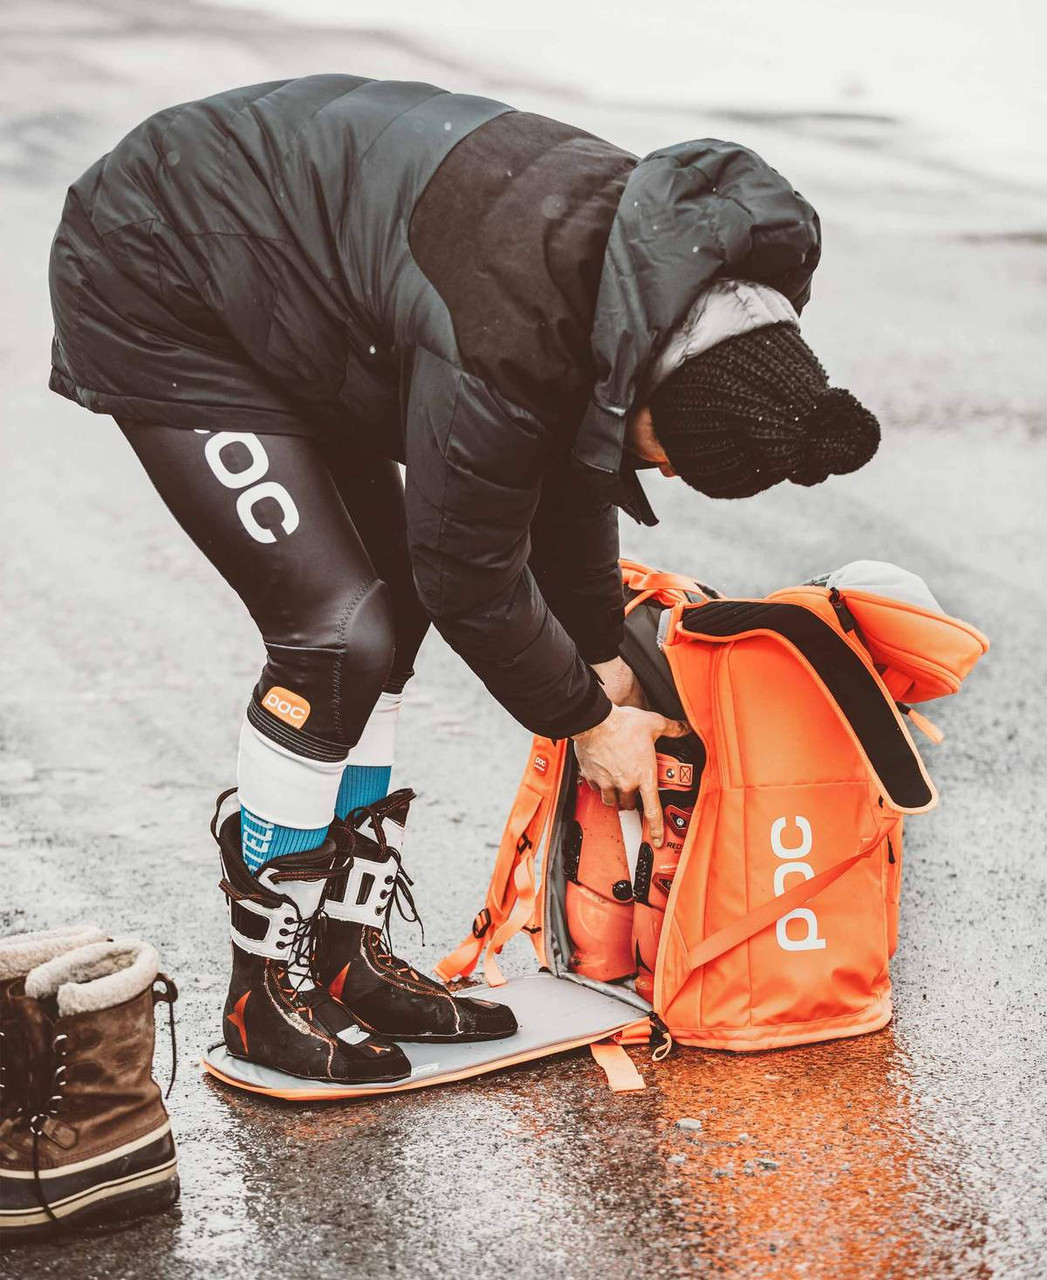 Bootbag Race - Sac chaussures ski